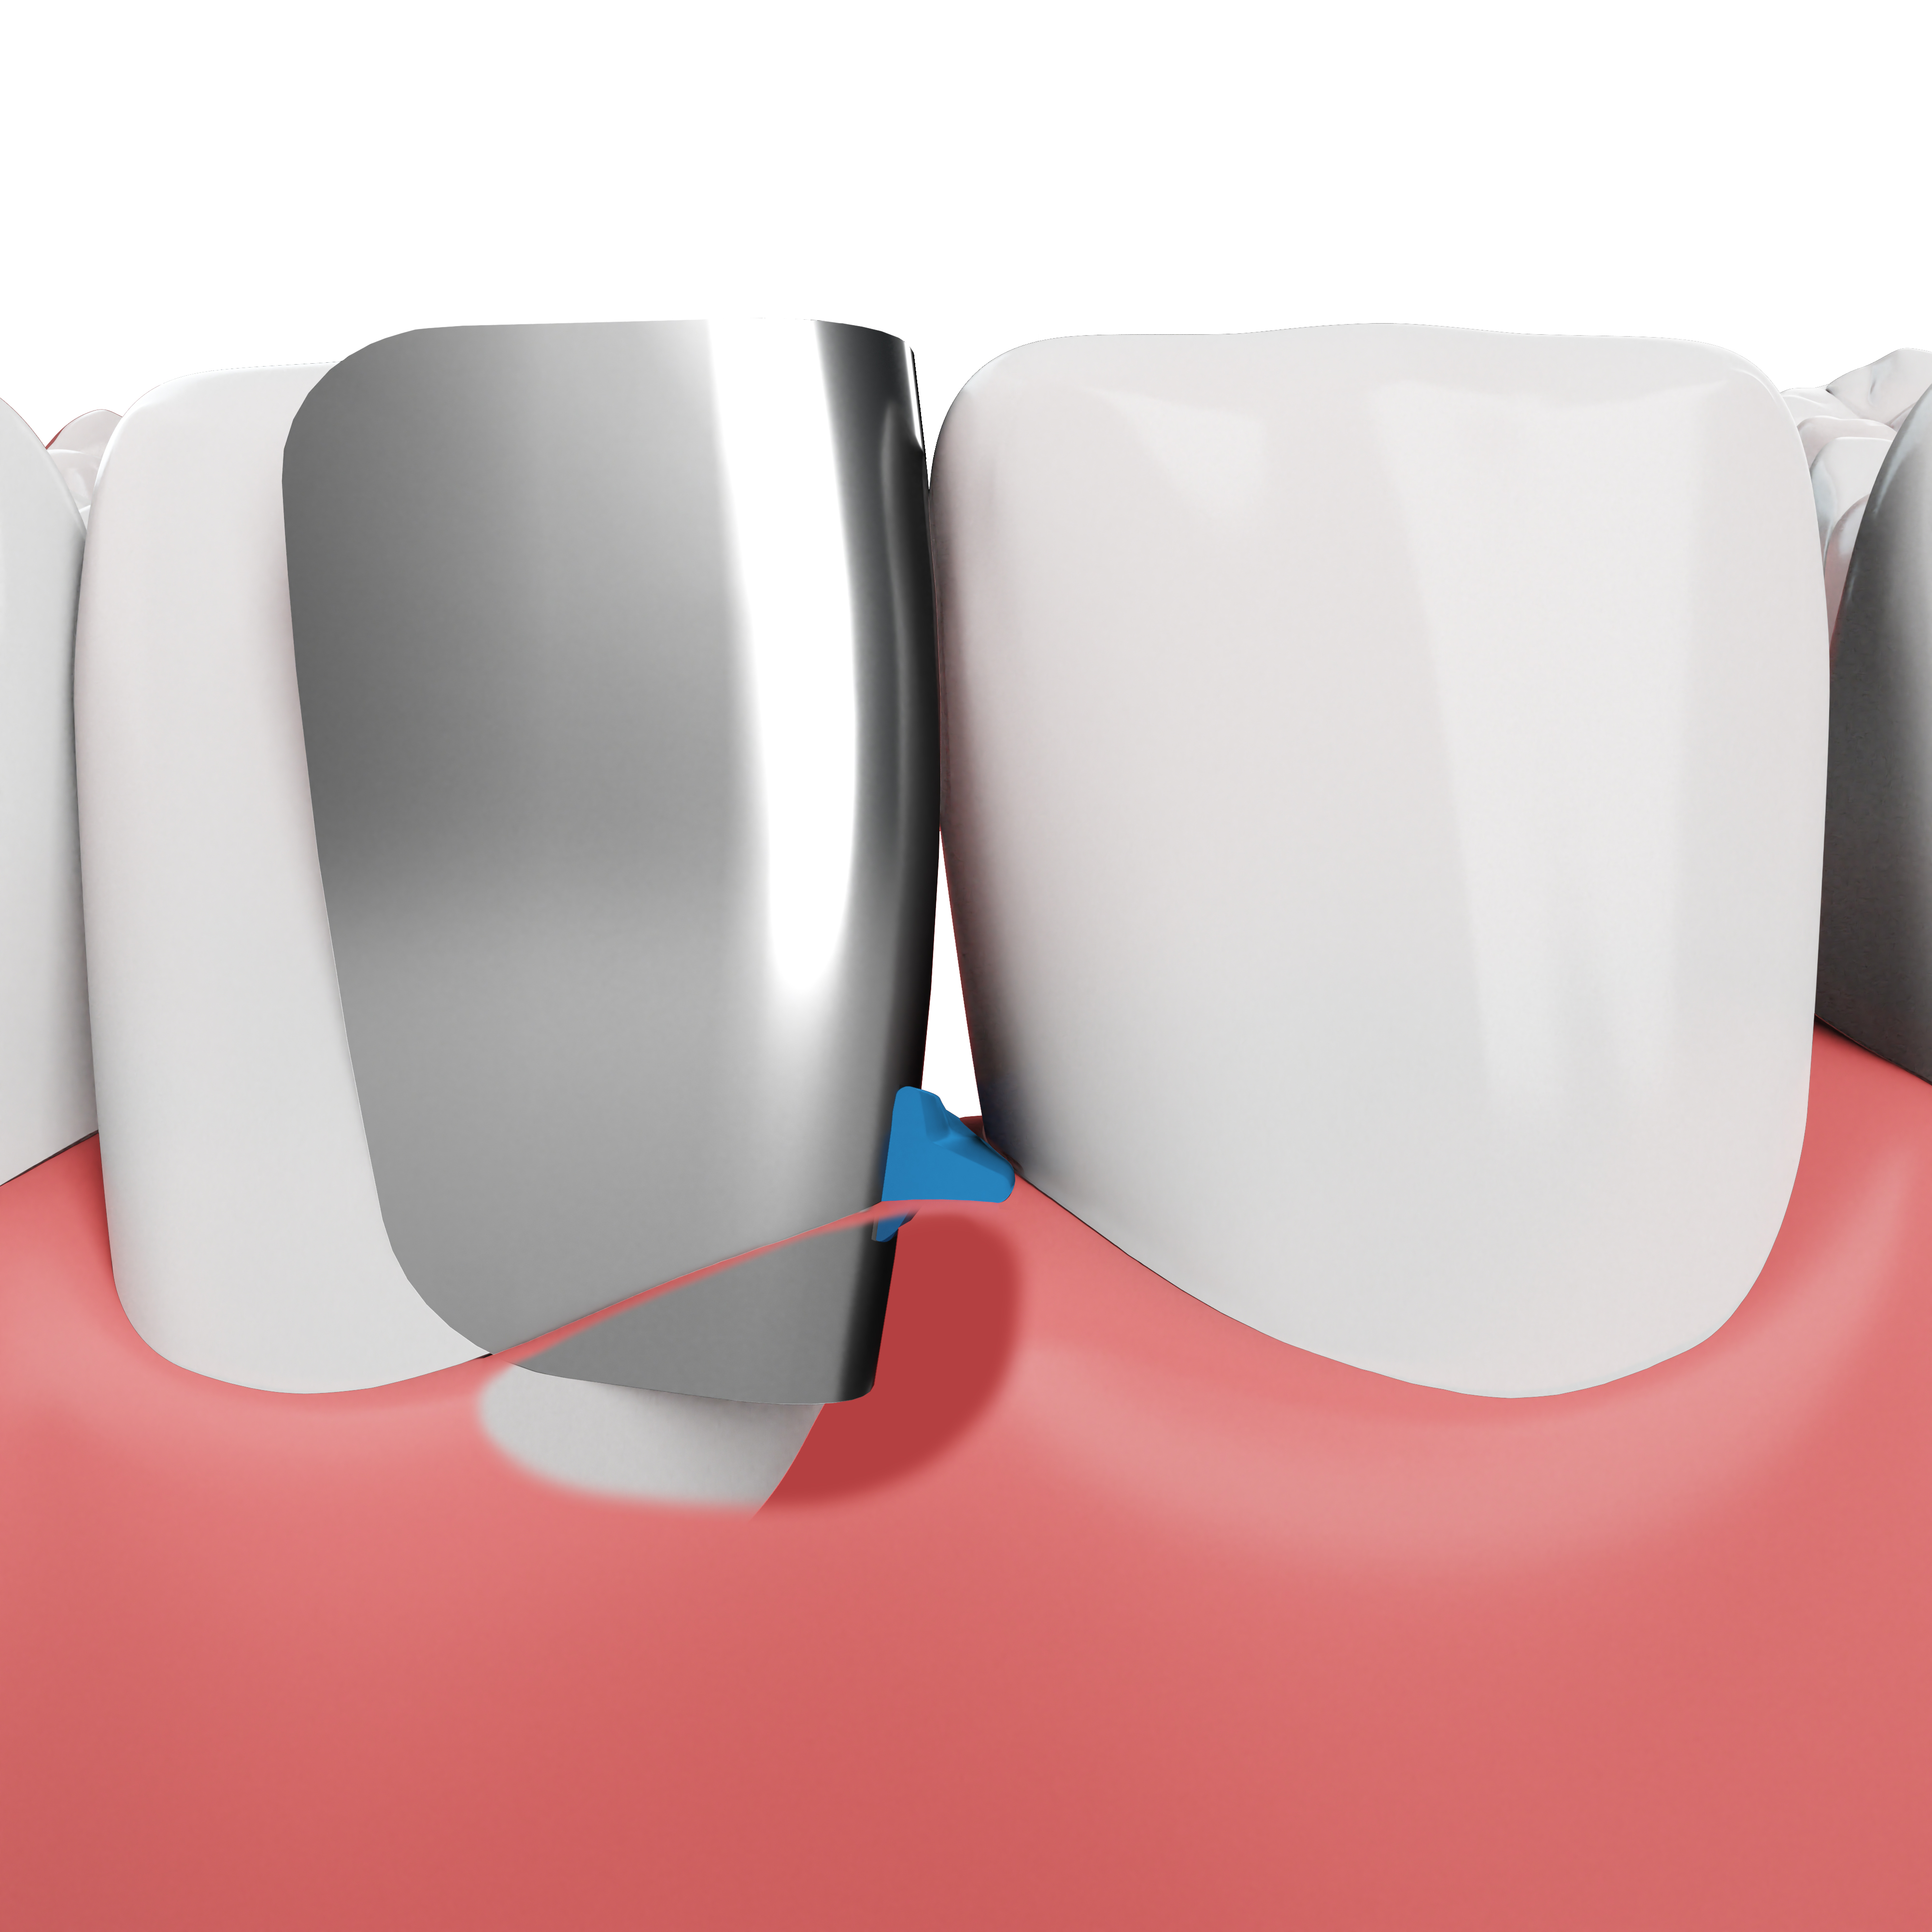 Anterior teeth cutaway